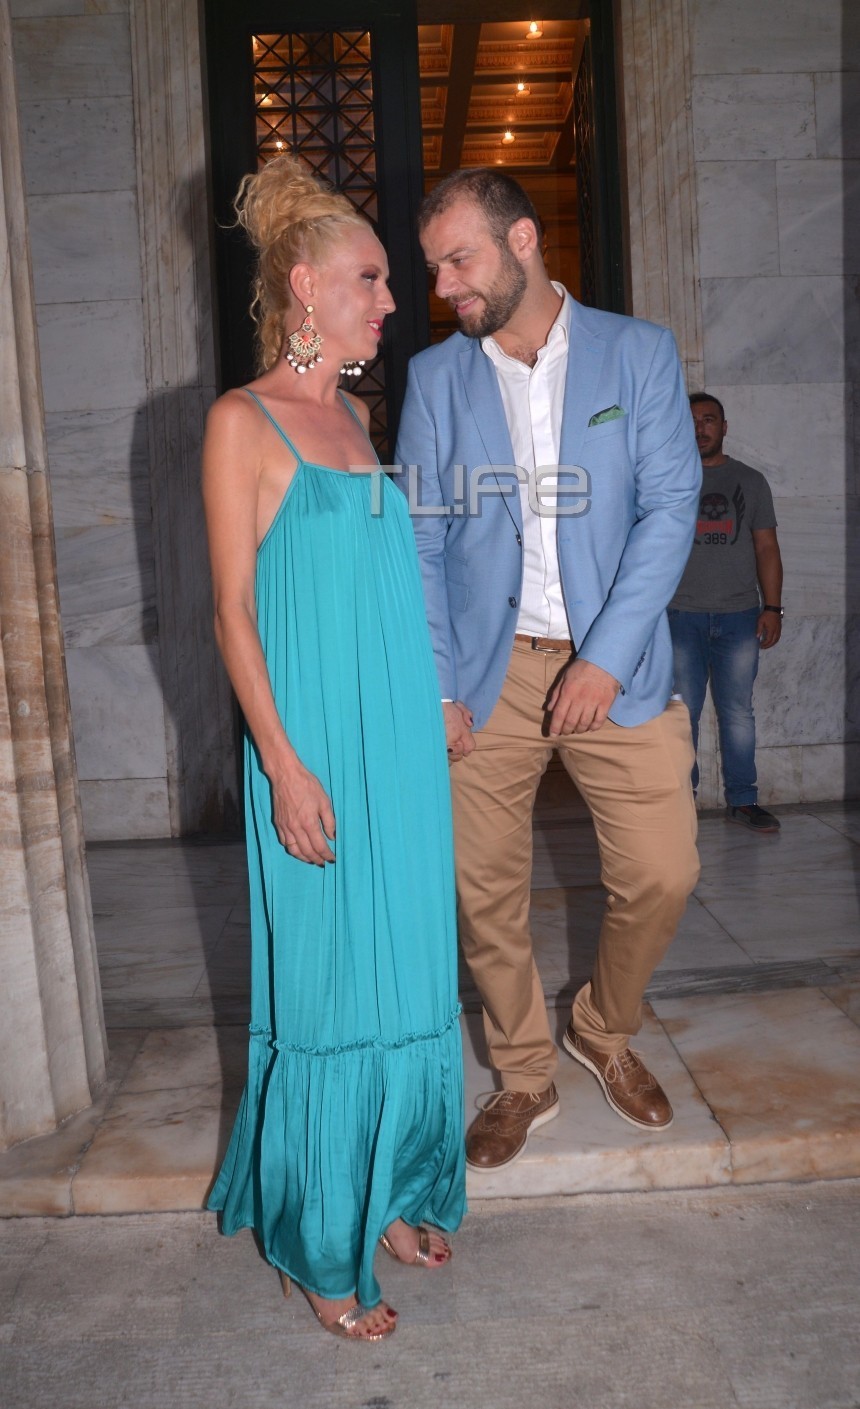 O ηθοποιός Ορέστης Τζιόβας παντρεύτηκε την αγαπημένη του στα… κρυφά, στο δημαρχείο Αθηνών! (ΕΙΚΟΝΕΣ)